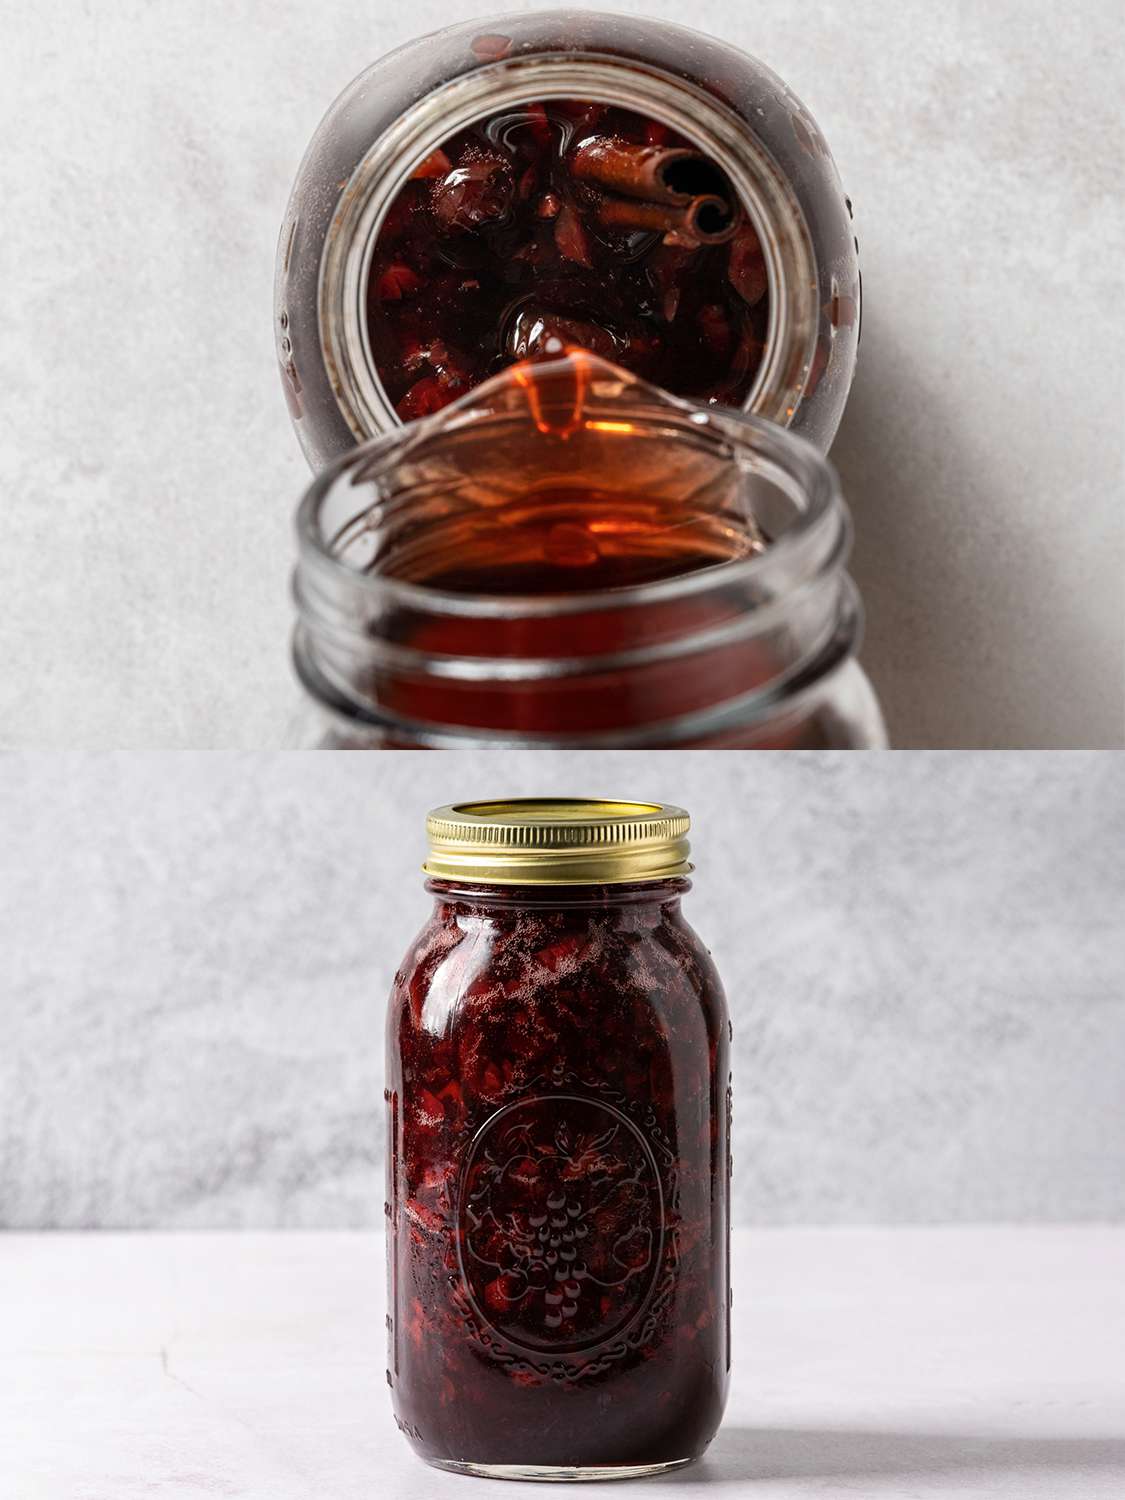 两个影像拼贴。上面的图片显示了从上到下的樱桃糖浆被倒入装有混合樱桃混合物的罐子的图像。下面的图片显示了在密封的玻璃瓶中搅拌的糖浆和樱桃混合物。